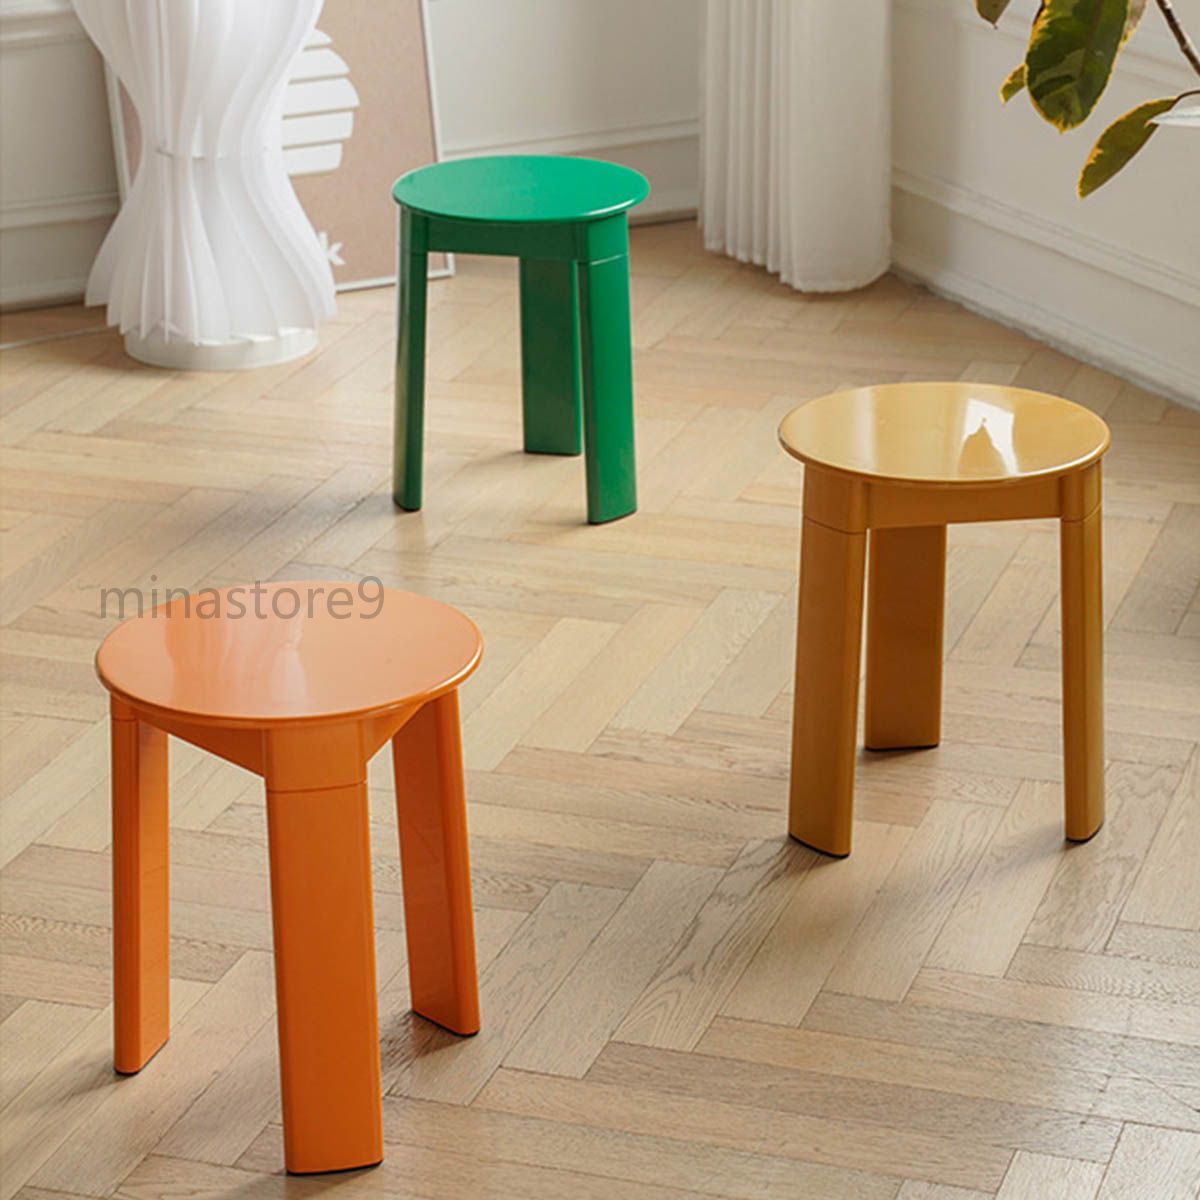 チェア 椅子 サイドテーブル サイドチェア スツール 勉強椅子 プラスチック シンプル 個性的 モダン レトロ 韓国インテリア 全4色